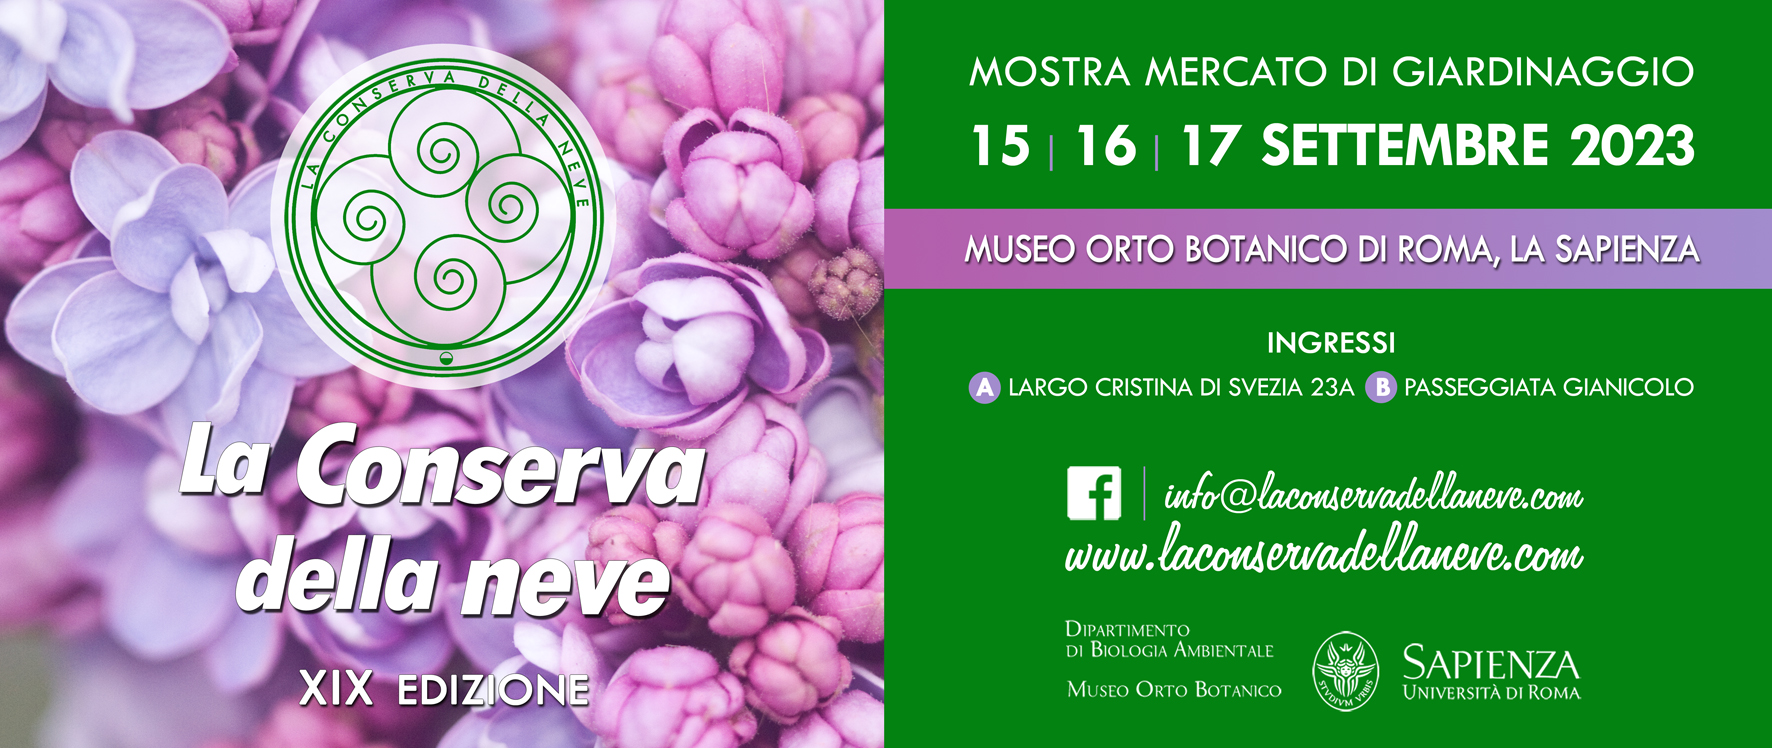 Questo fine settimana all’Orto Botanico di Roma LA CONSERVA DELLA NEVE: espositori, incontri e laboratori nella mostra-mercato dedicata alle piante rare e da collezione